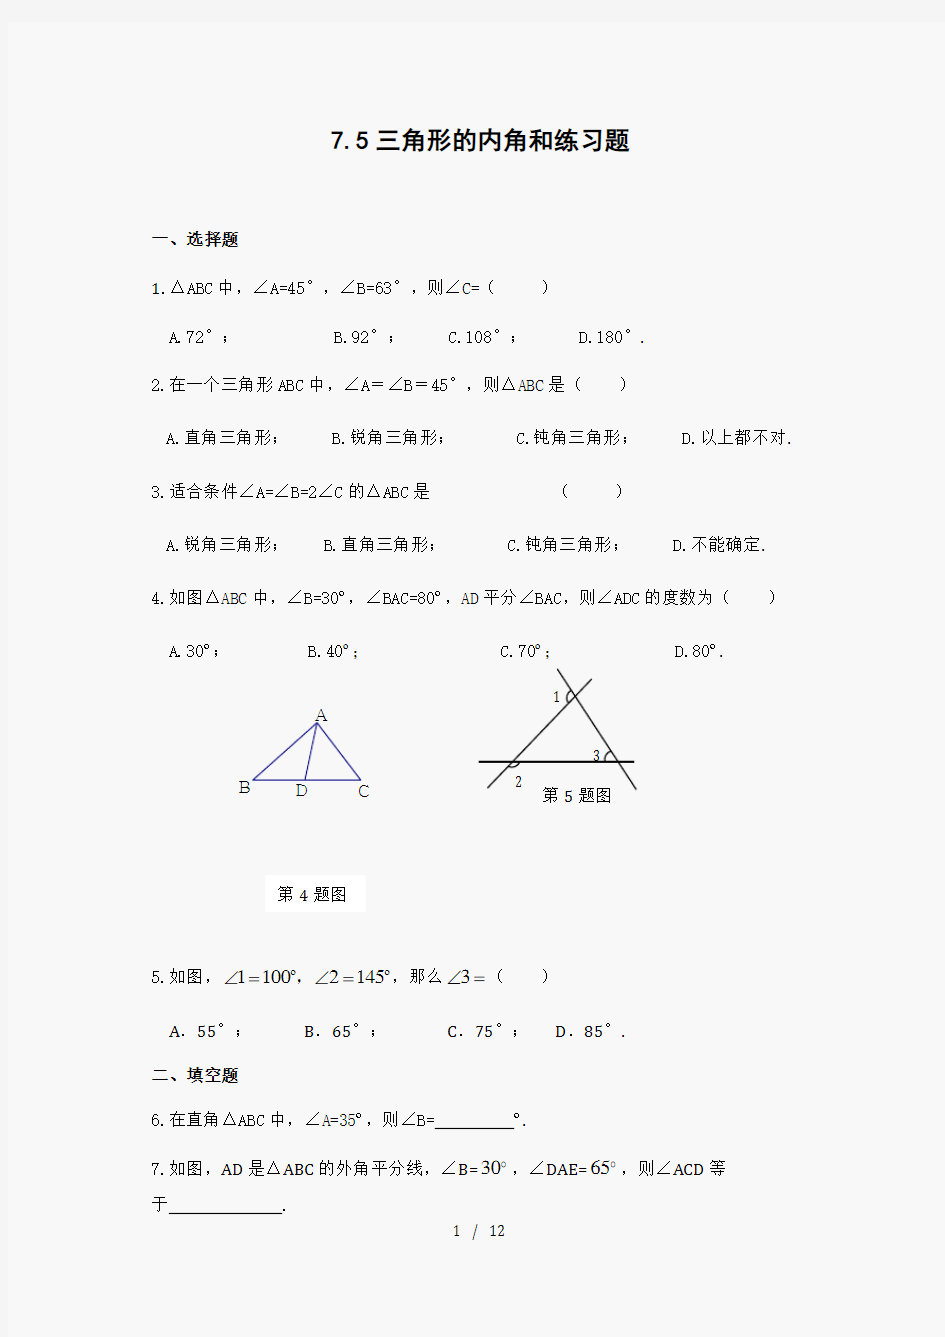 初一数学第七章三角形内角和练习题含答案